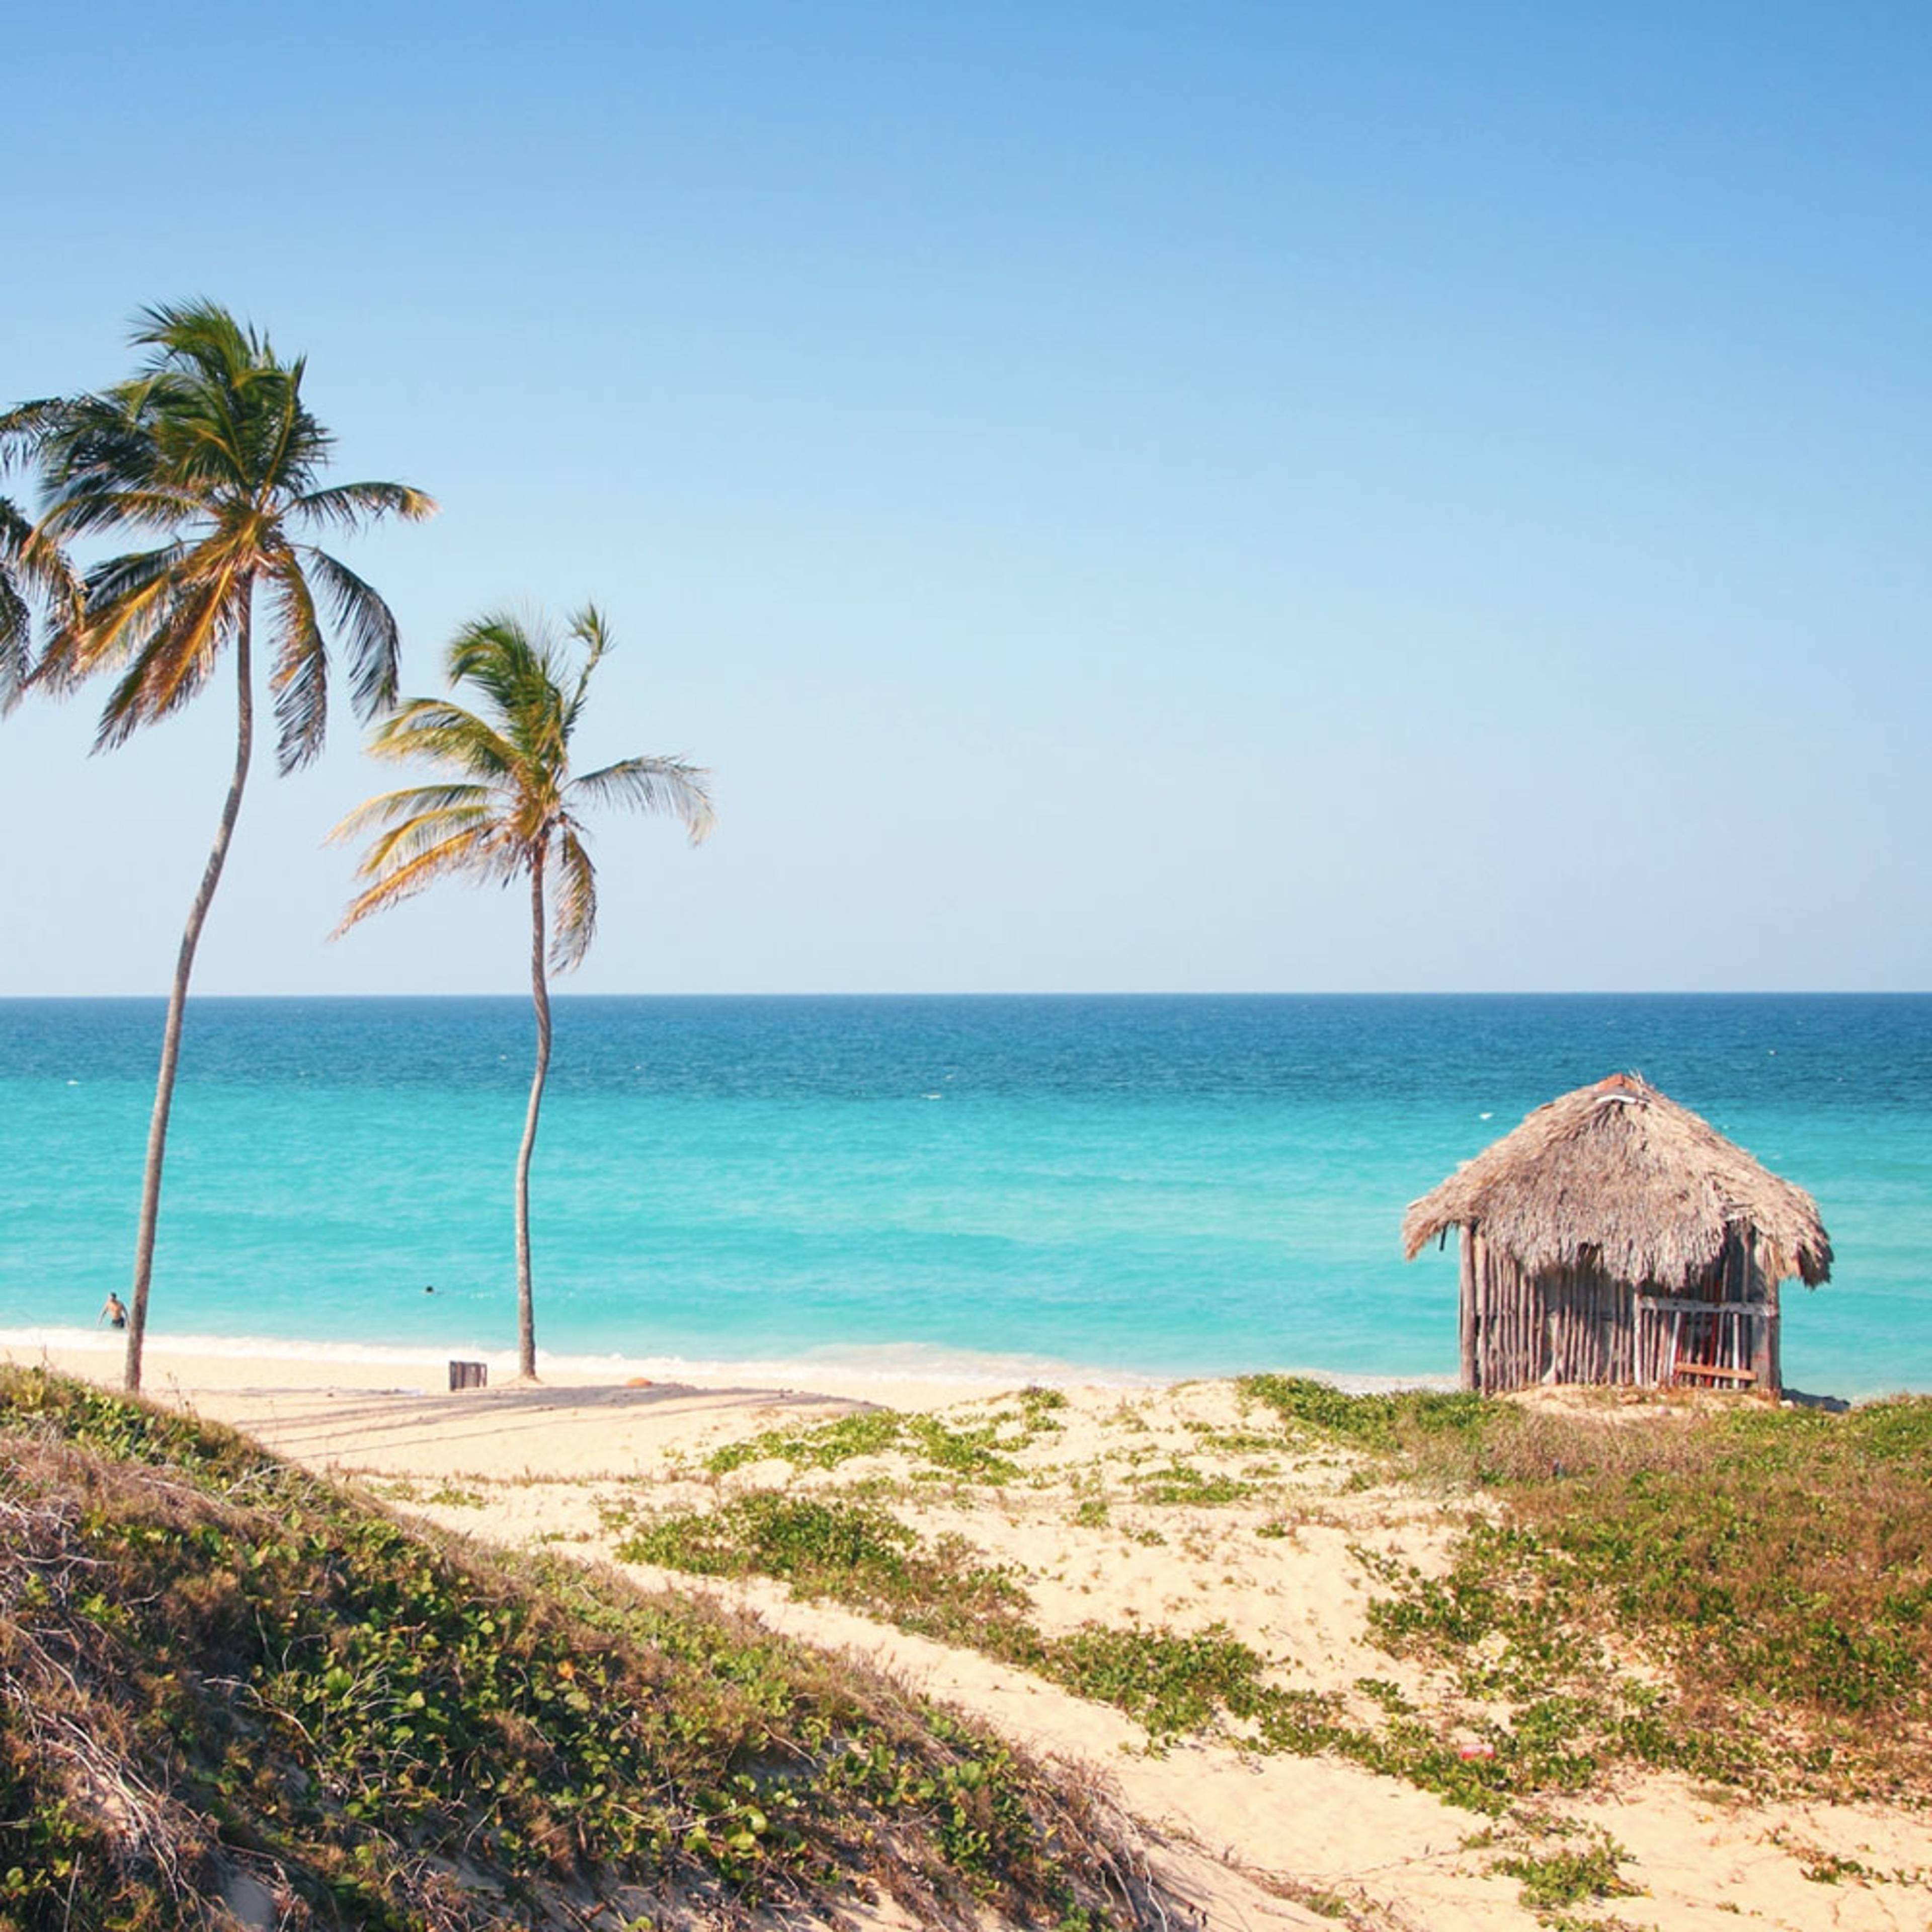 Découvrez les plus belles plages lors de votre voyage à Cuba 100% sur mesure